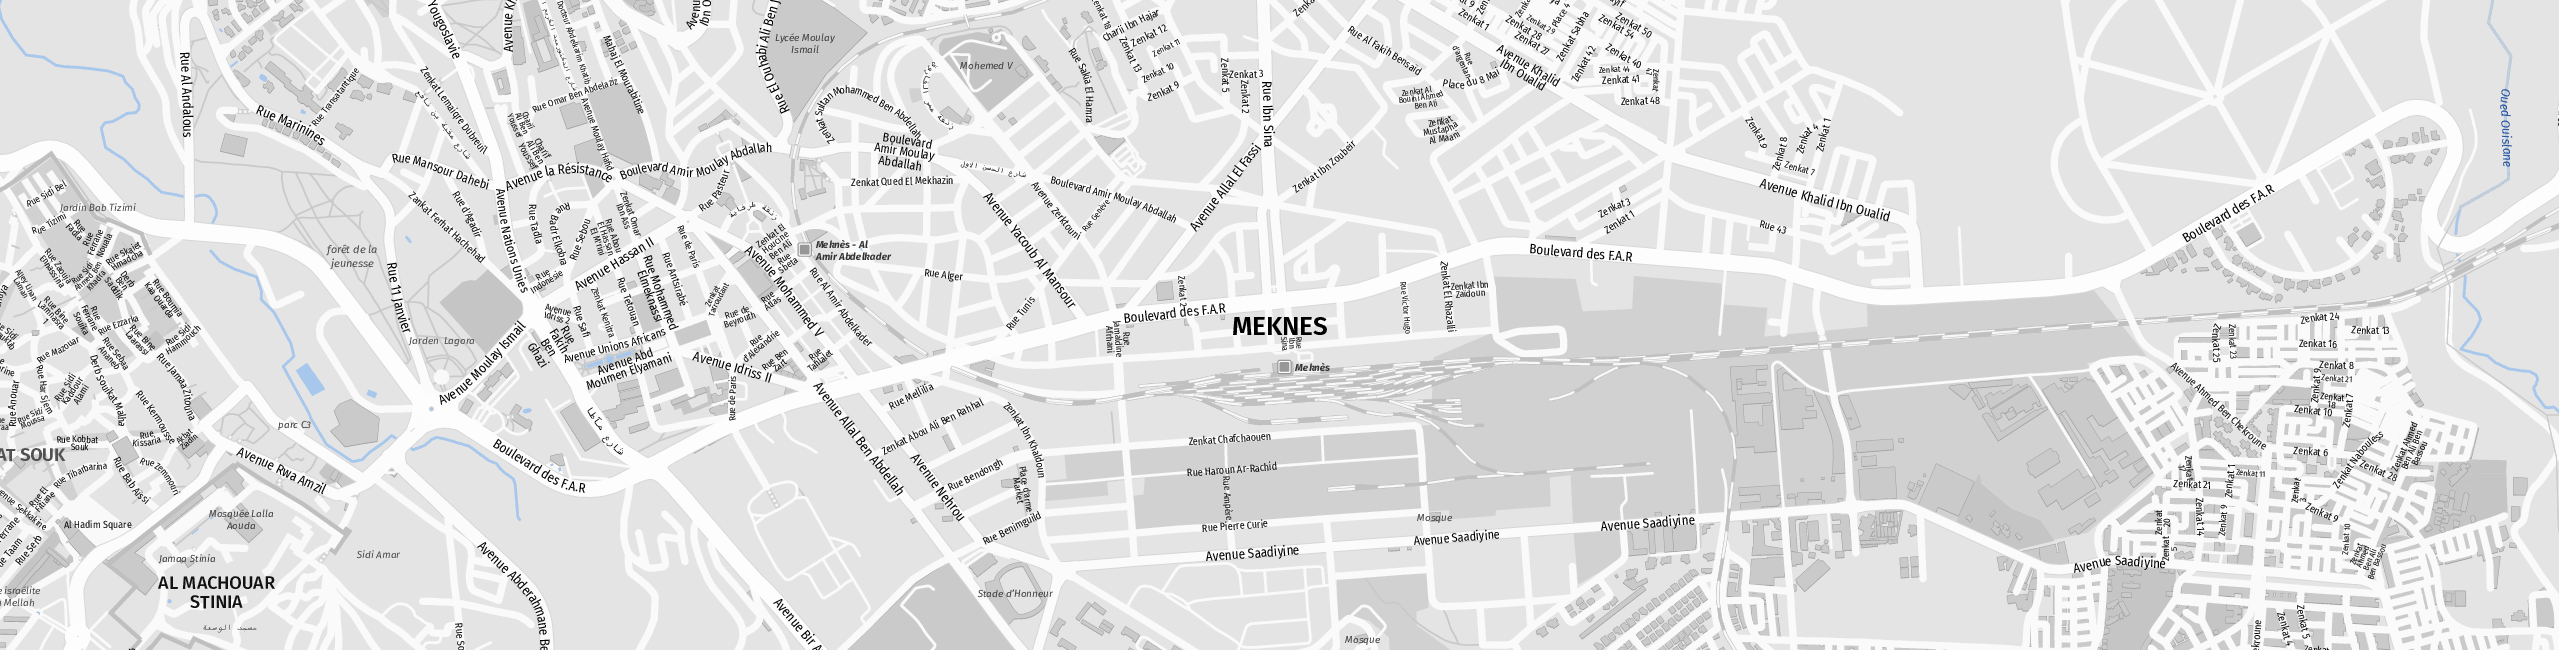 Stadtplan Meknès zum Downloaden.